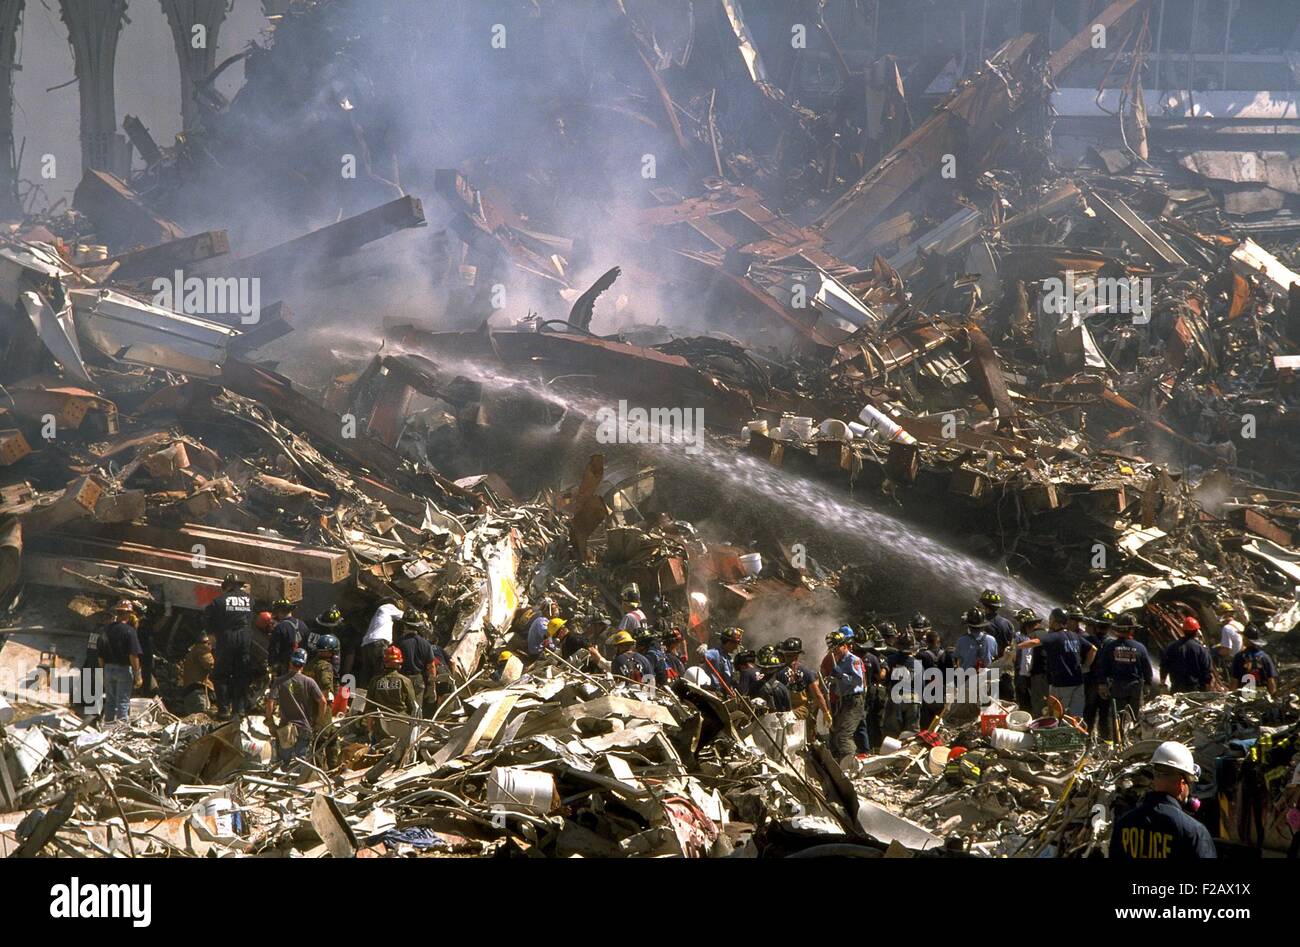 Feuerwehr-Sprays noch brennenden Trümmern des World Trade Centers am 16. September 2001. In der oberen rechten Ecke befinden sich Ruinen von WTC 3, das Marriott World Trade Center, einmal ein 22 Geschichte Hotel. New York City, nach dem 11. September 2001 Terroranschläge. (BSLOC 2015 2 89) Stockfoto